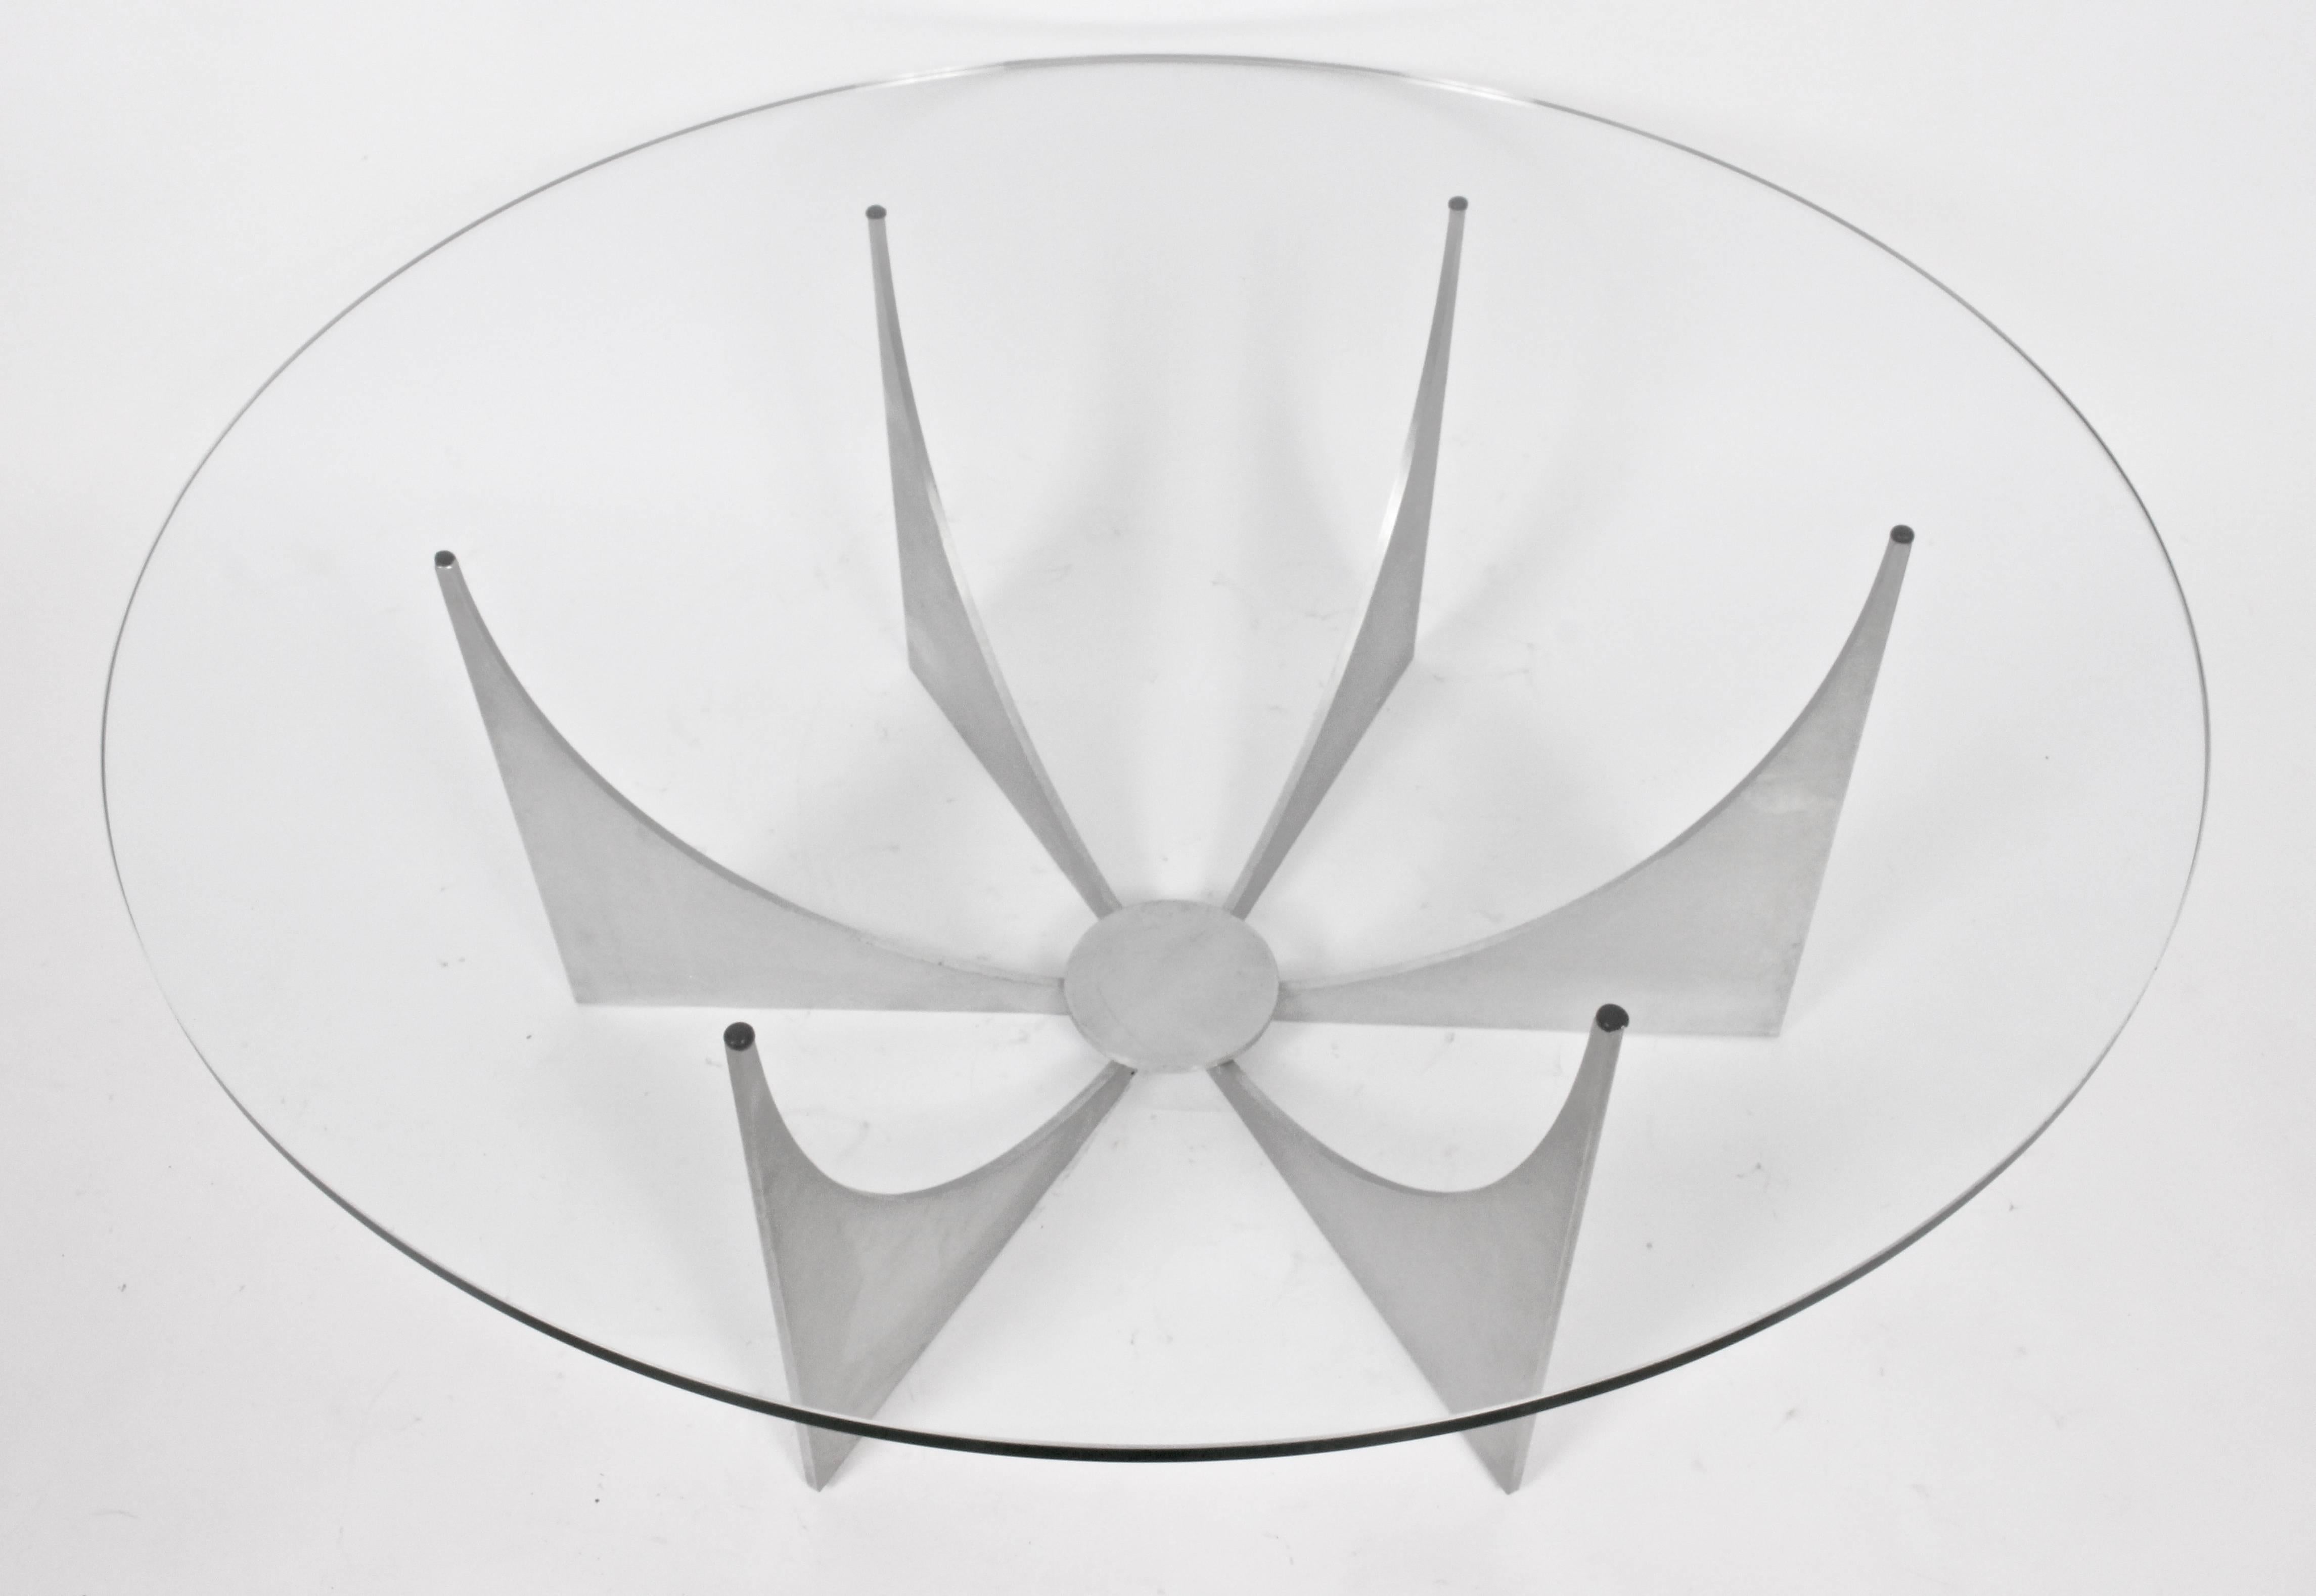 Donald Drumm Minimalistischer runder Cocktailtisch aus Aluminiumguss und Glas, um 1970. Klassisch. Groß. Modernistisch. Geometrisch. 2 Stück. Sockel 15H x 30,5W. Das Glas misst 0,5 T x 42 B.  Bitte beachten Sie, dass der Sockel ohne die Glasplatte